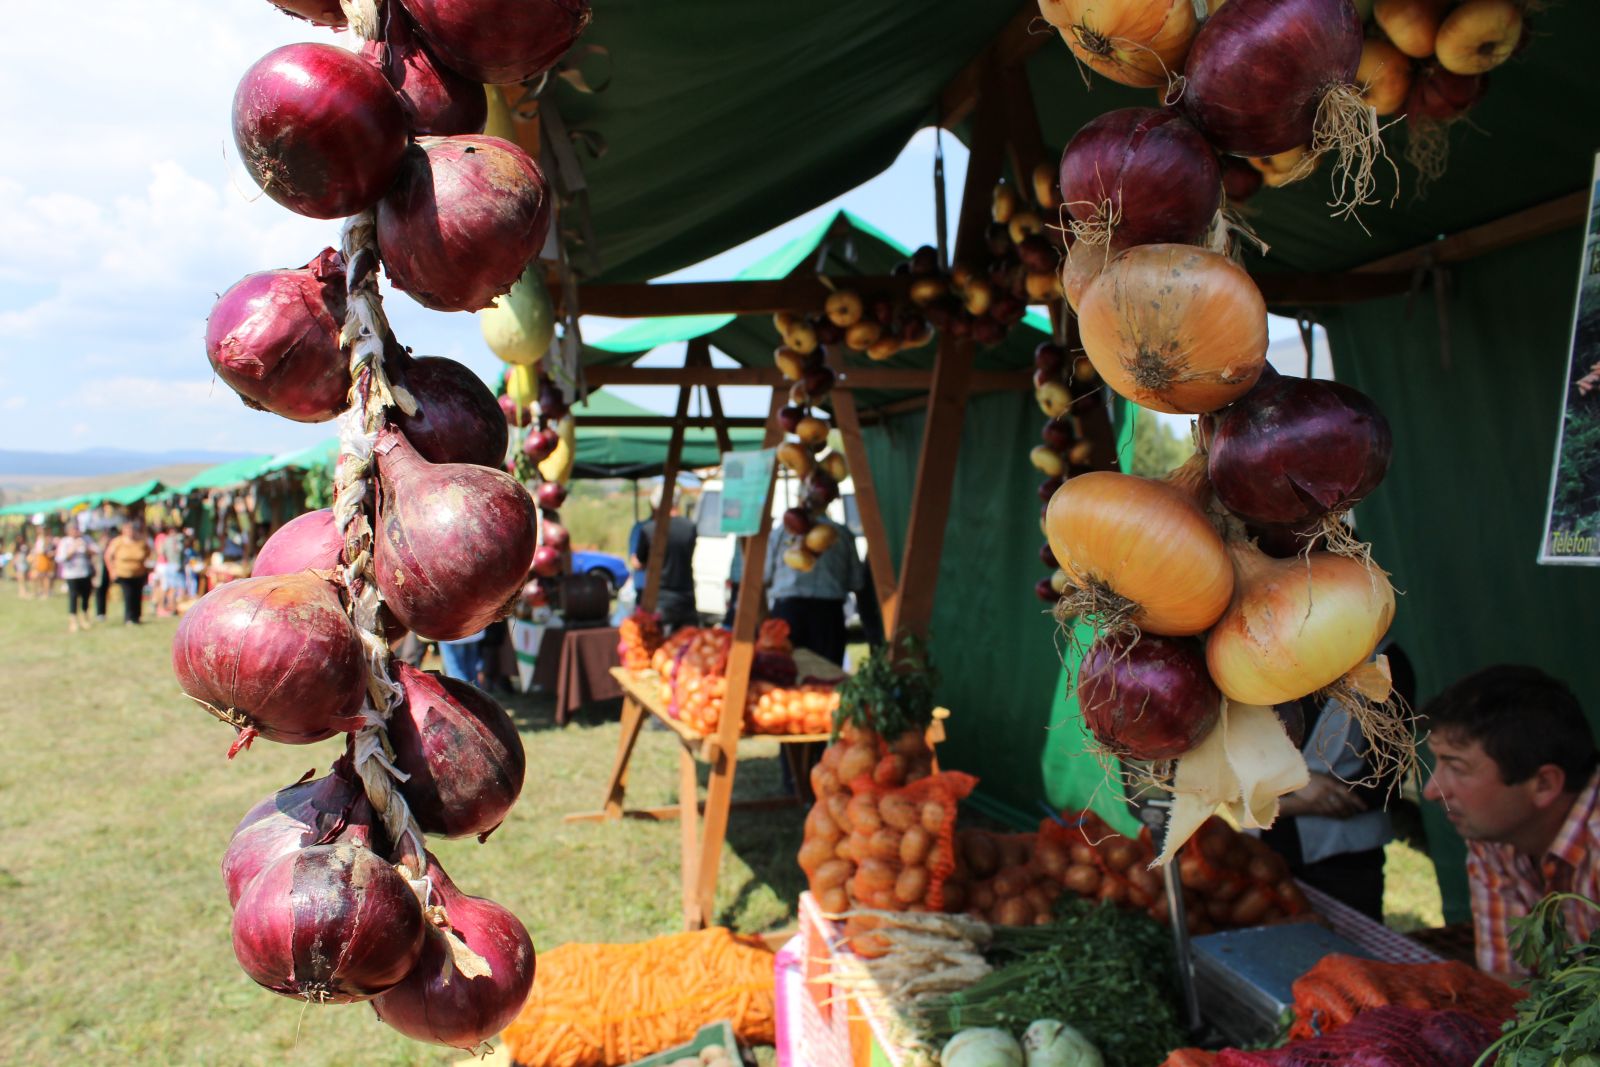 Egy becsületes falusi fesztiválon helyi termékeket is lehet vásárolni, de egy becsületes hagymafesztiválon elmaradhatatlan portéka maga a hagyma.
